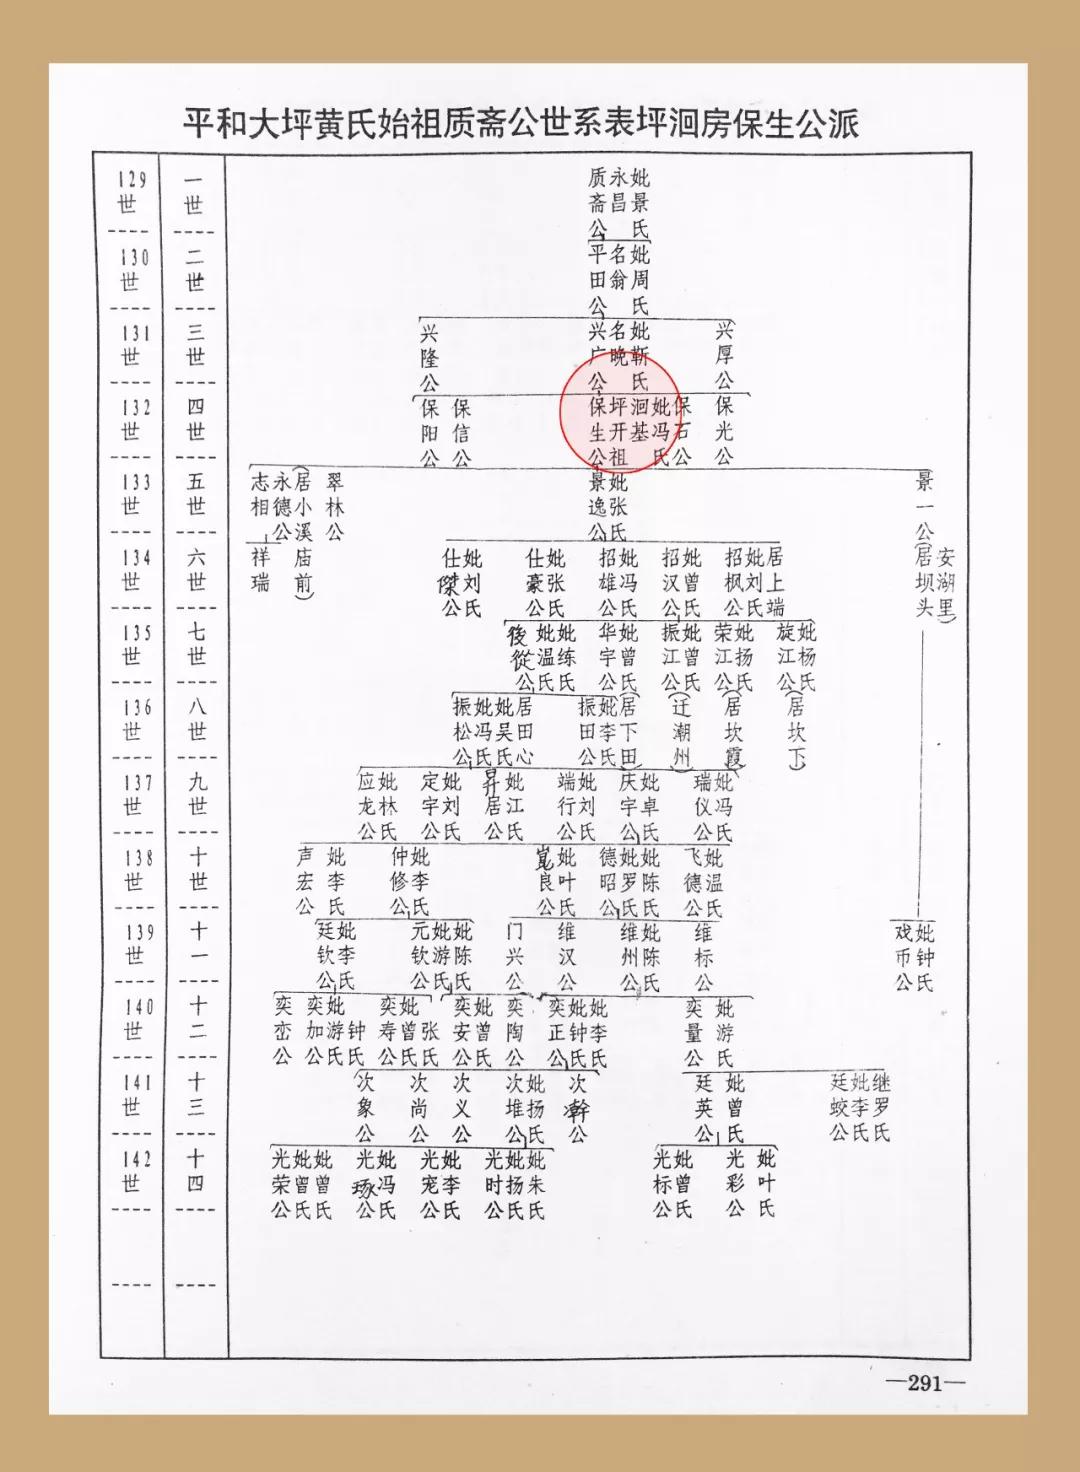 《大坪黄氏族谱》1995年版 记载的兴广公支系